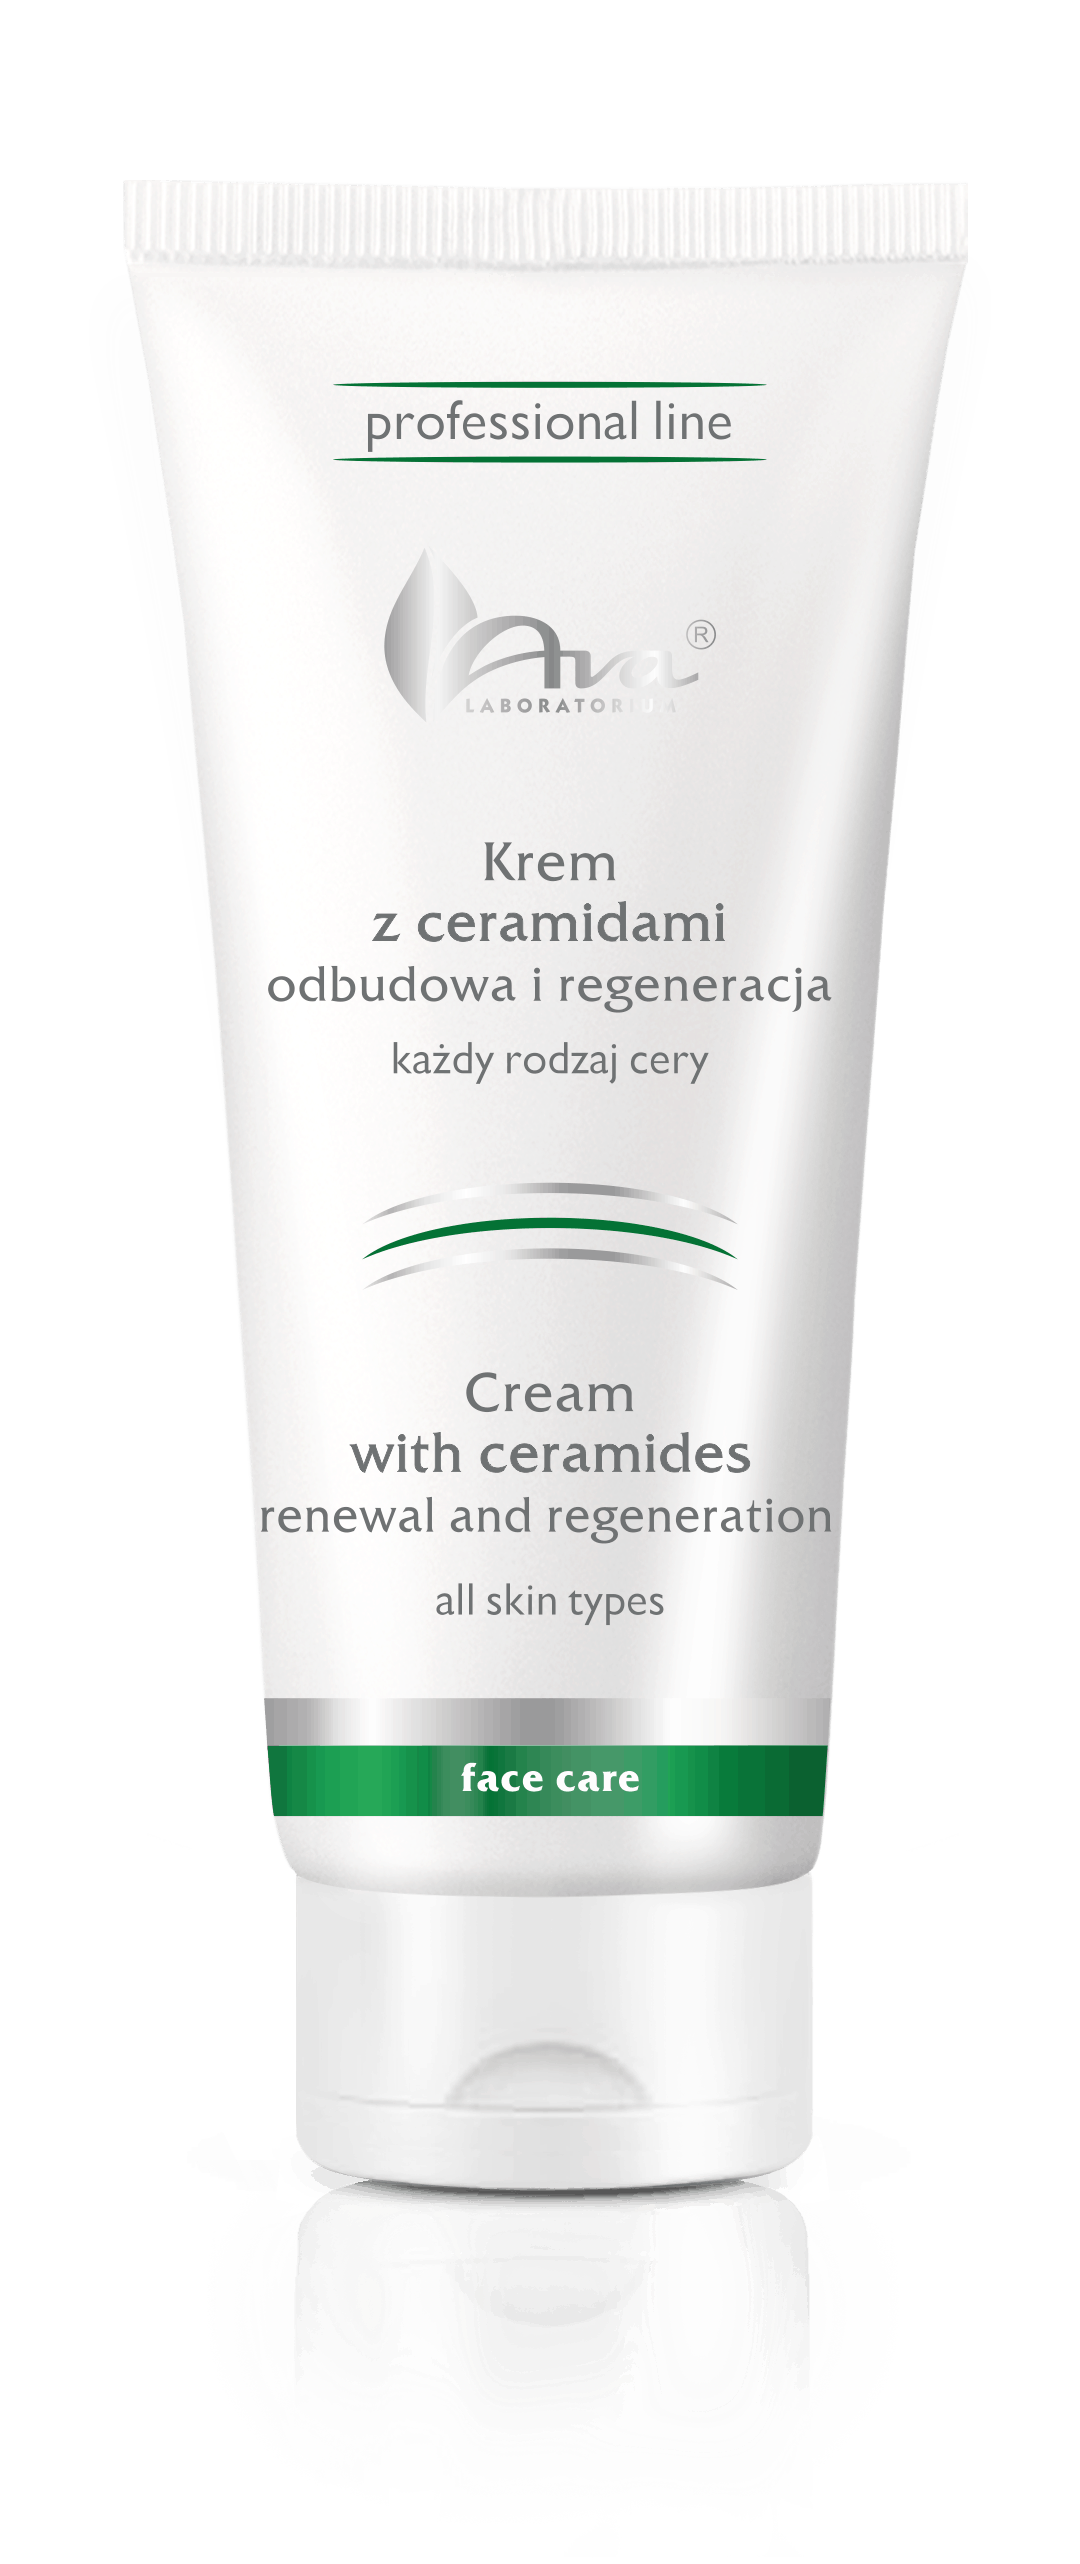 Cream with ceramides